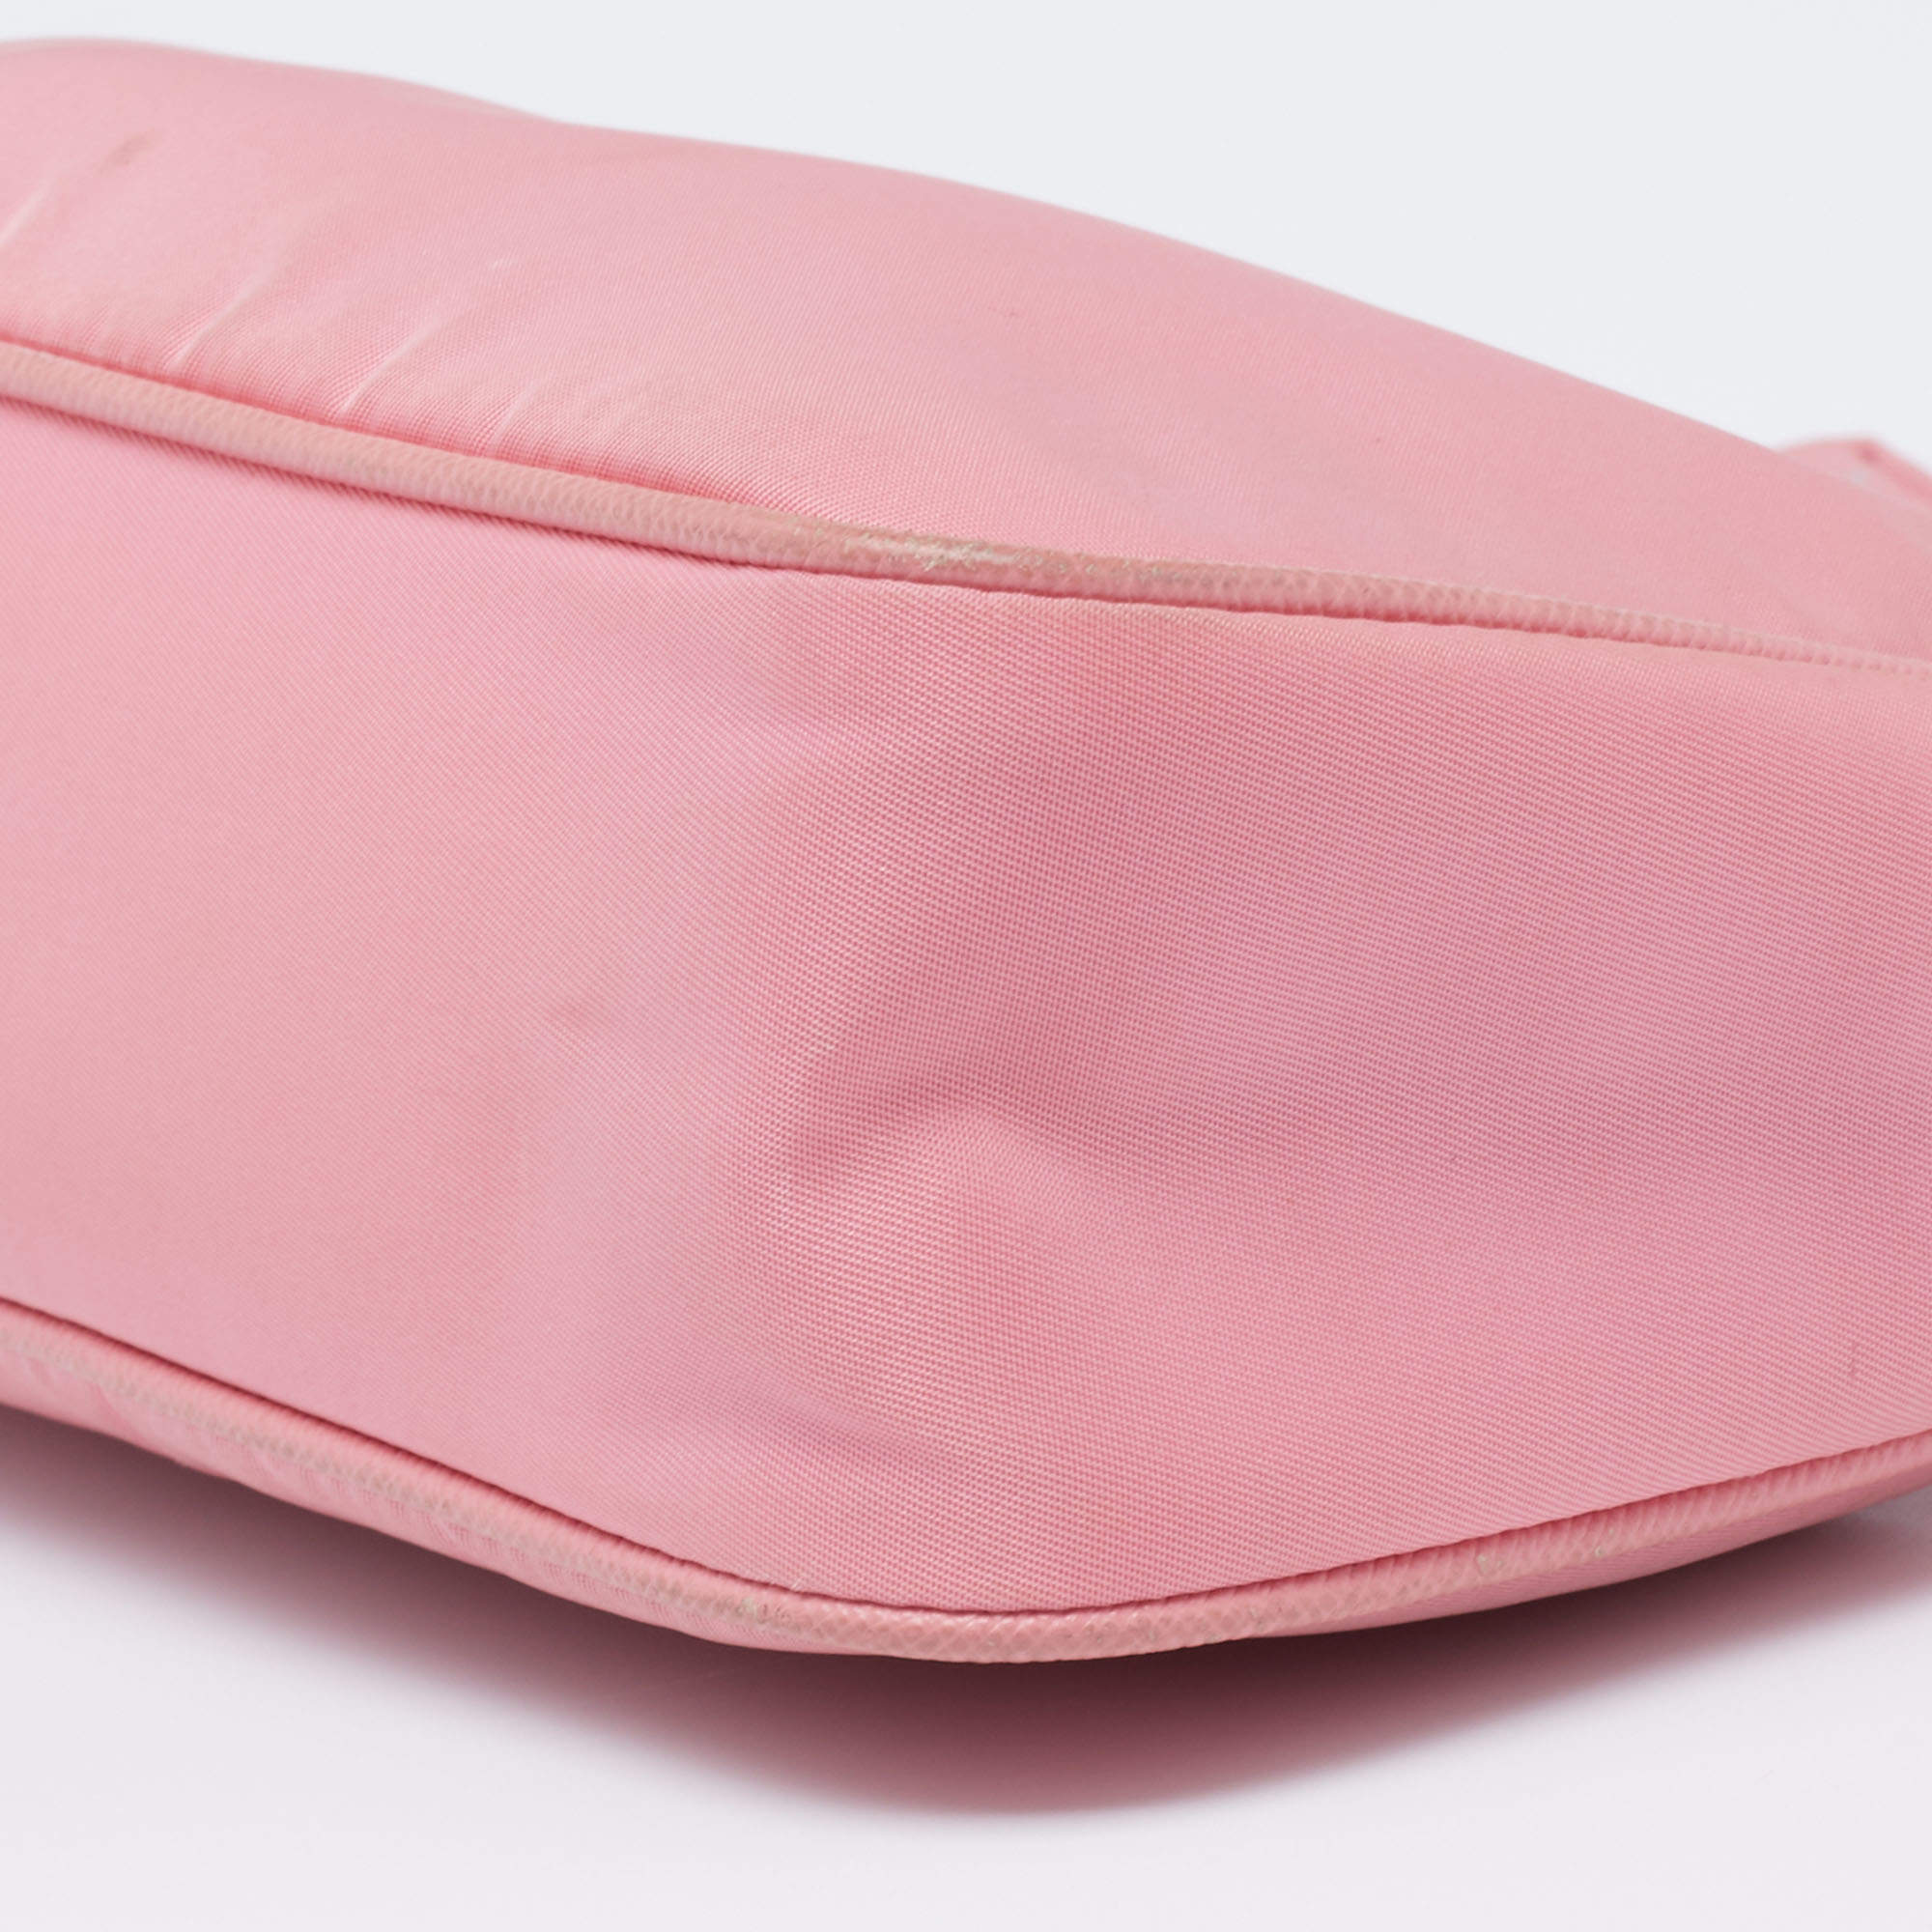 Re-edition 2005 handbag Prada Pink in Wicker - 35398258